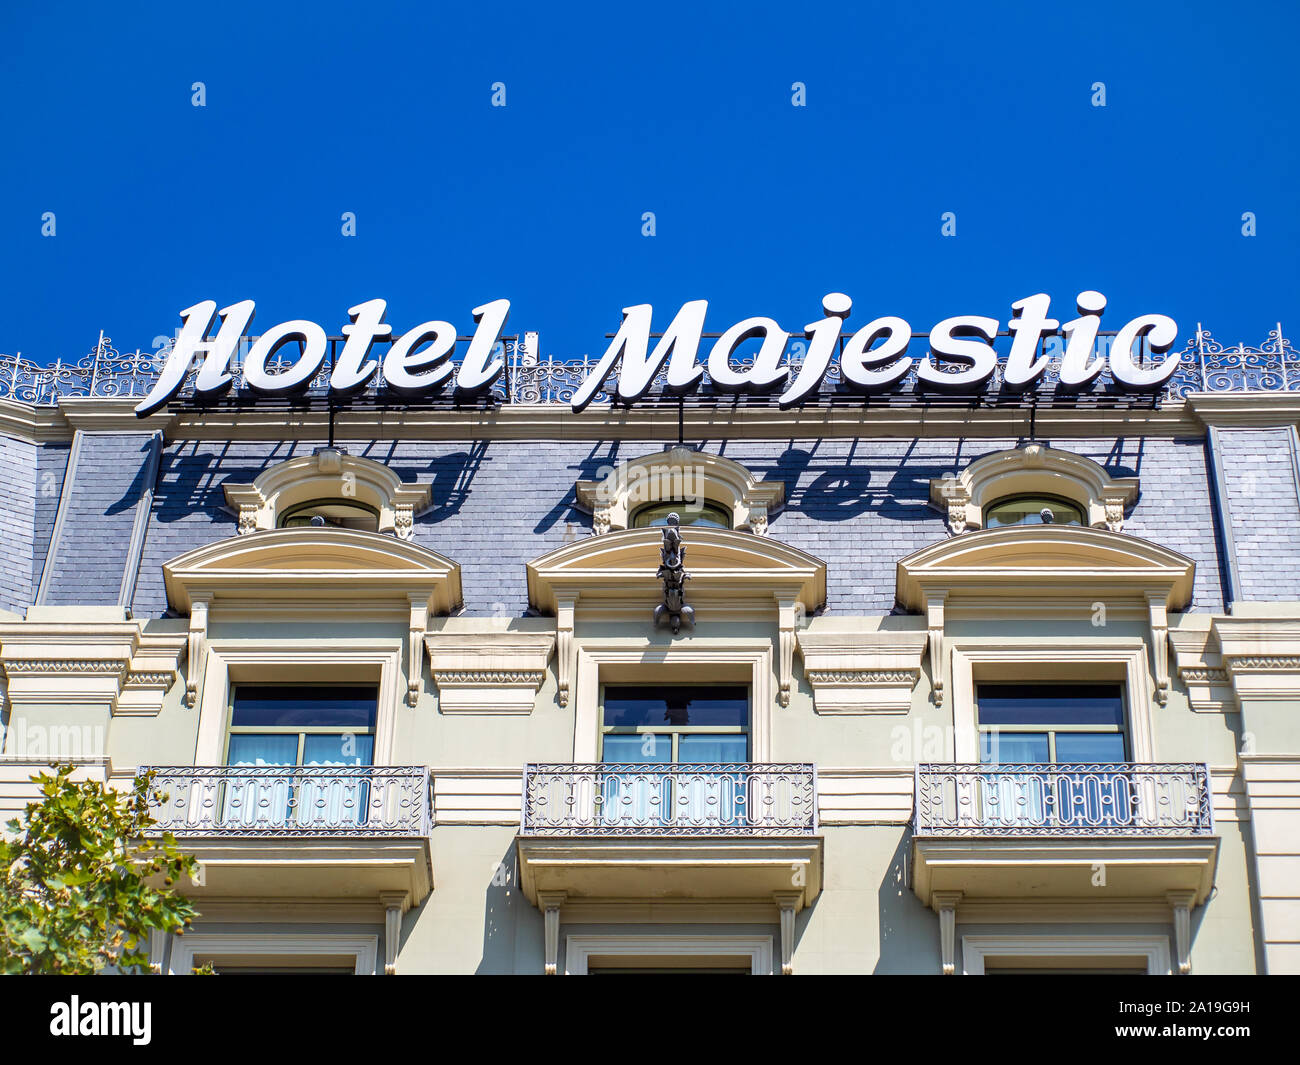 BARCELONA, SPANIEN - 20. SEPTEMBER 2019: Hotel Majestic Fassade, Inschrift auf dem Dach auf den klaren Himmel Hintergrund Stockfoto